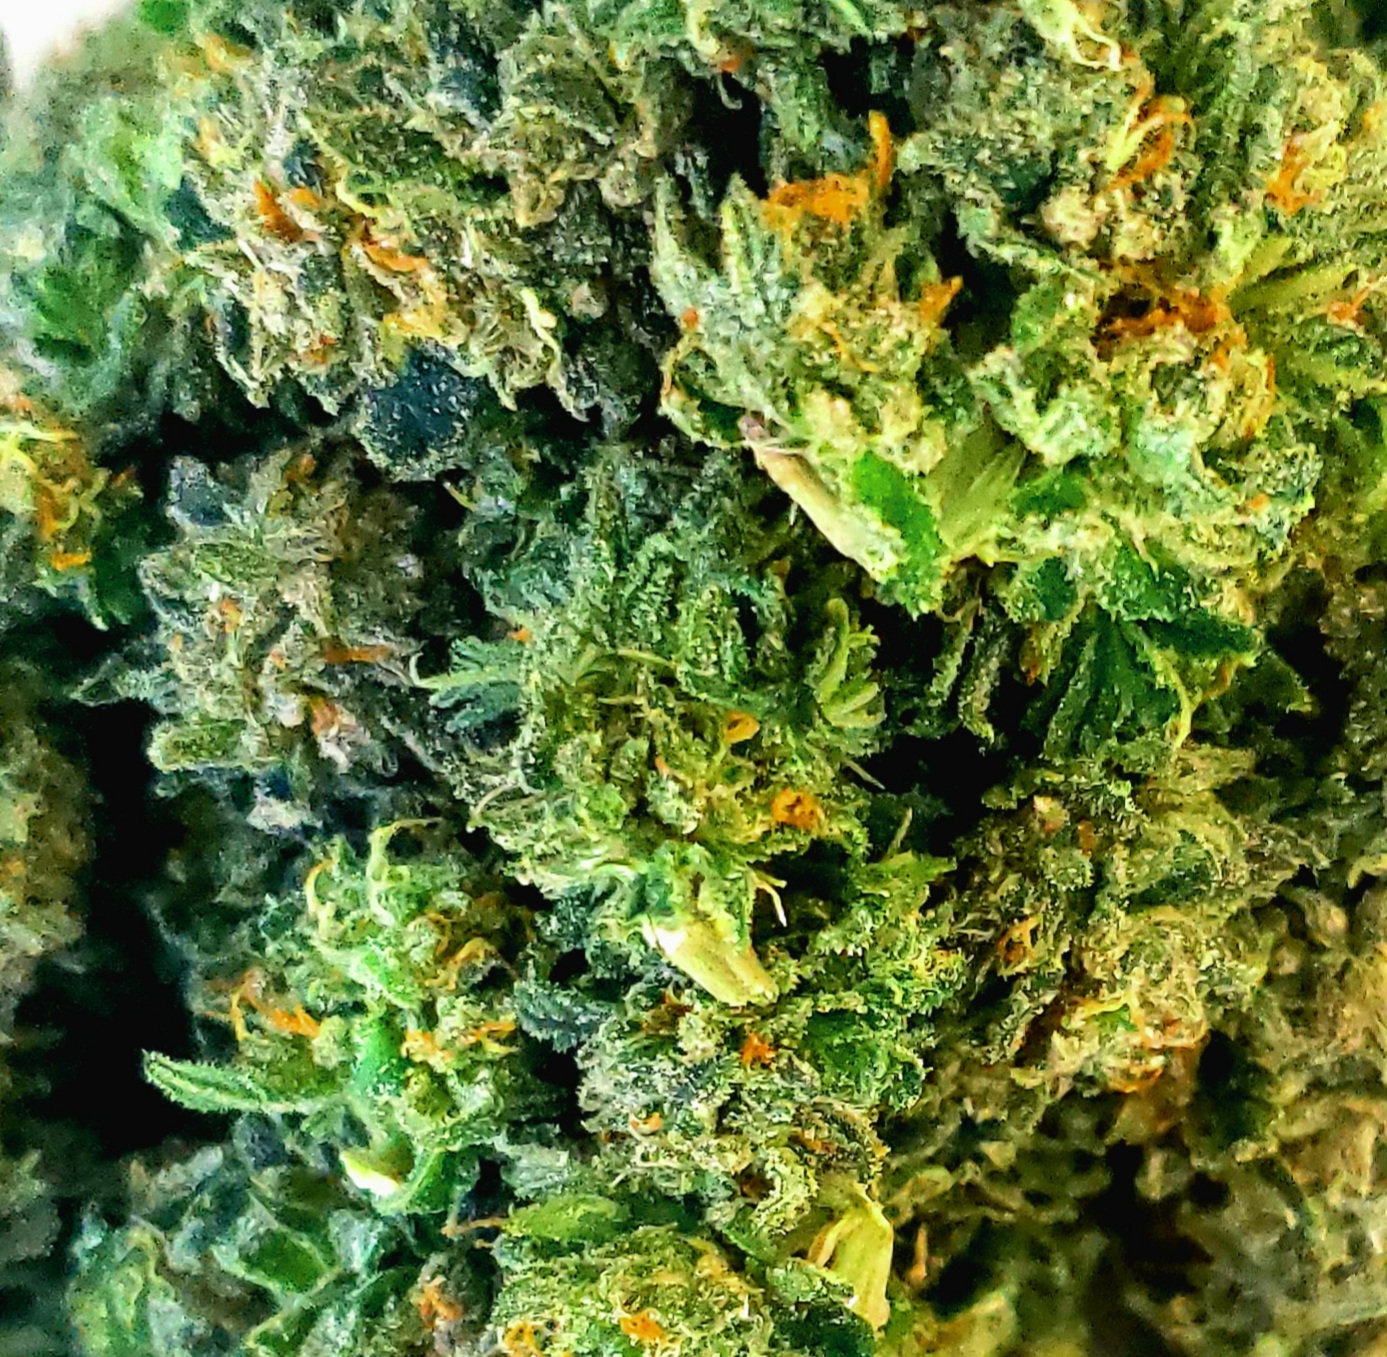 fresh-trimmed-cannabis